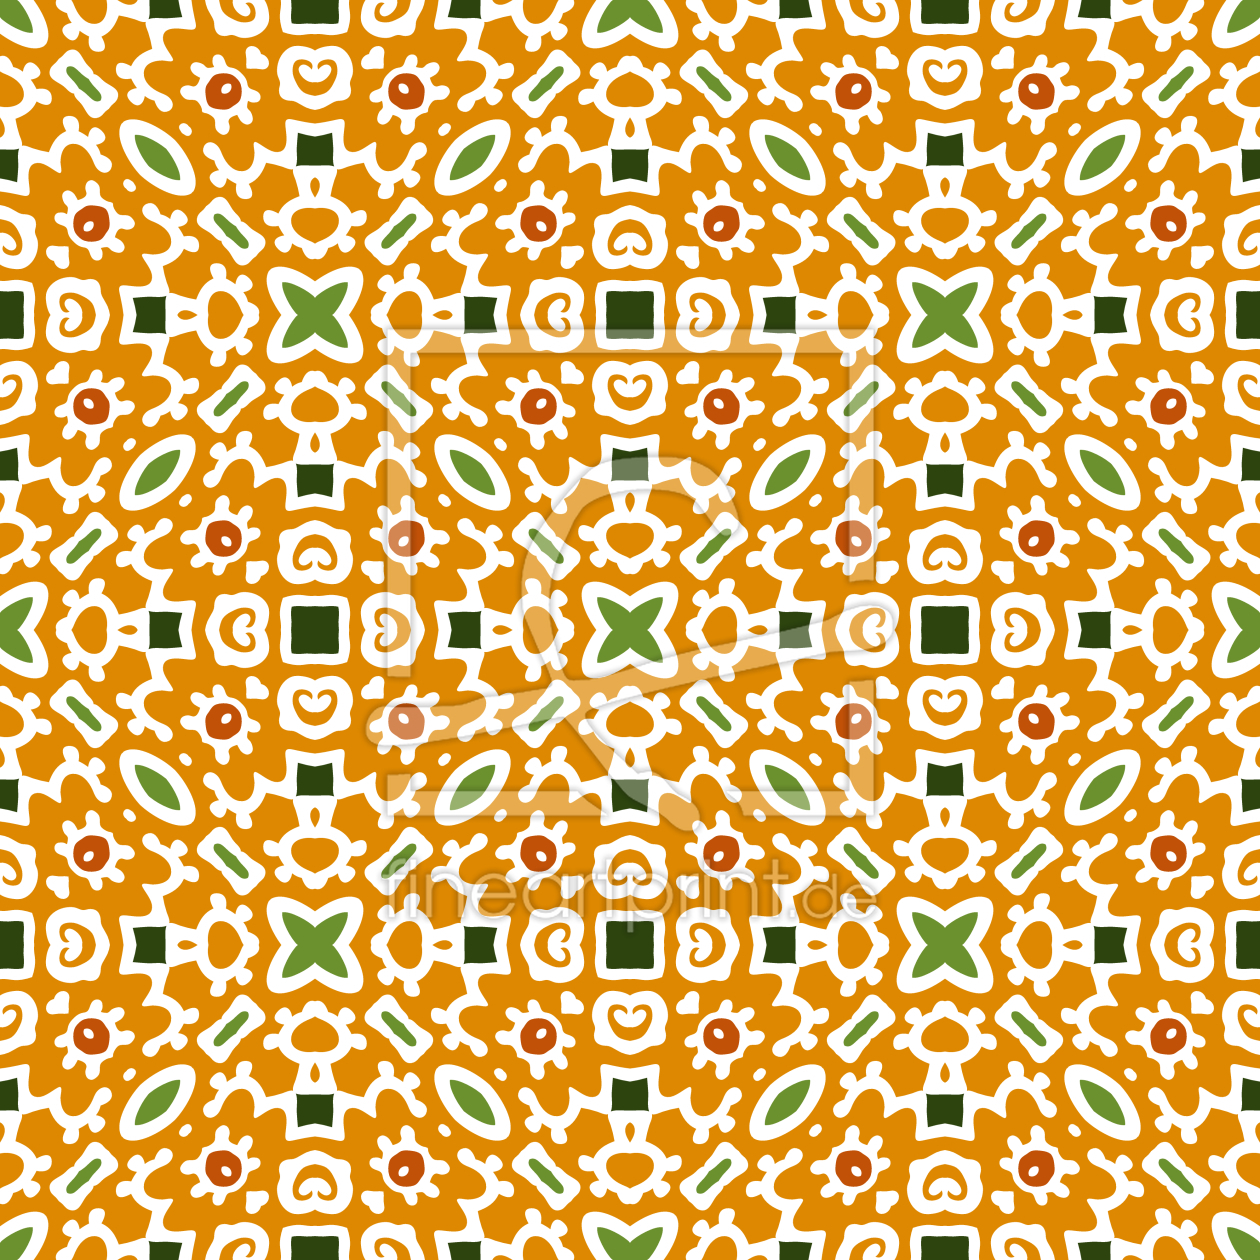 Bild-Nr.: 9015167 Quer In den Quadraten erstellt von patterndesigns-com